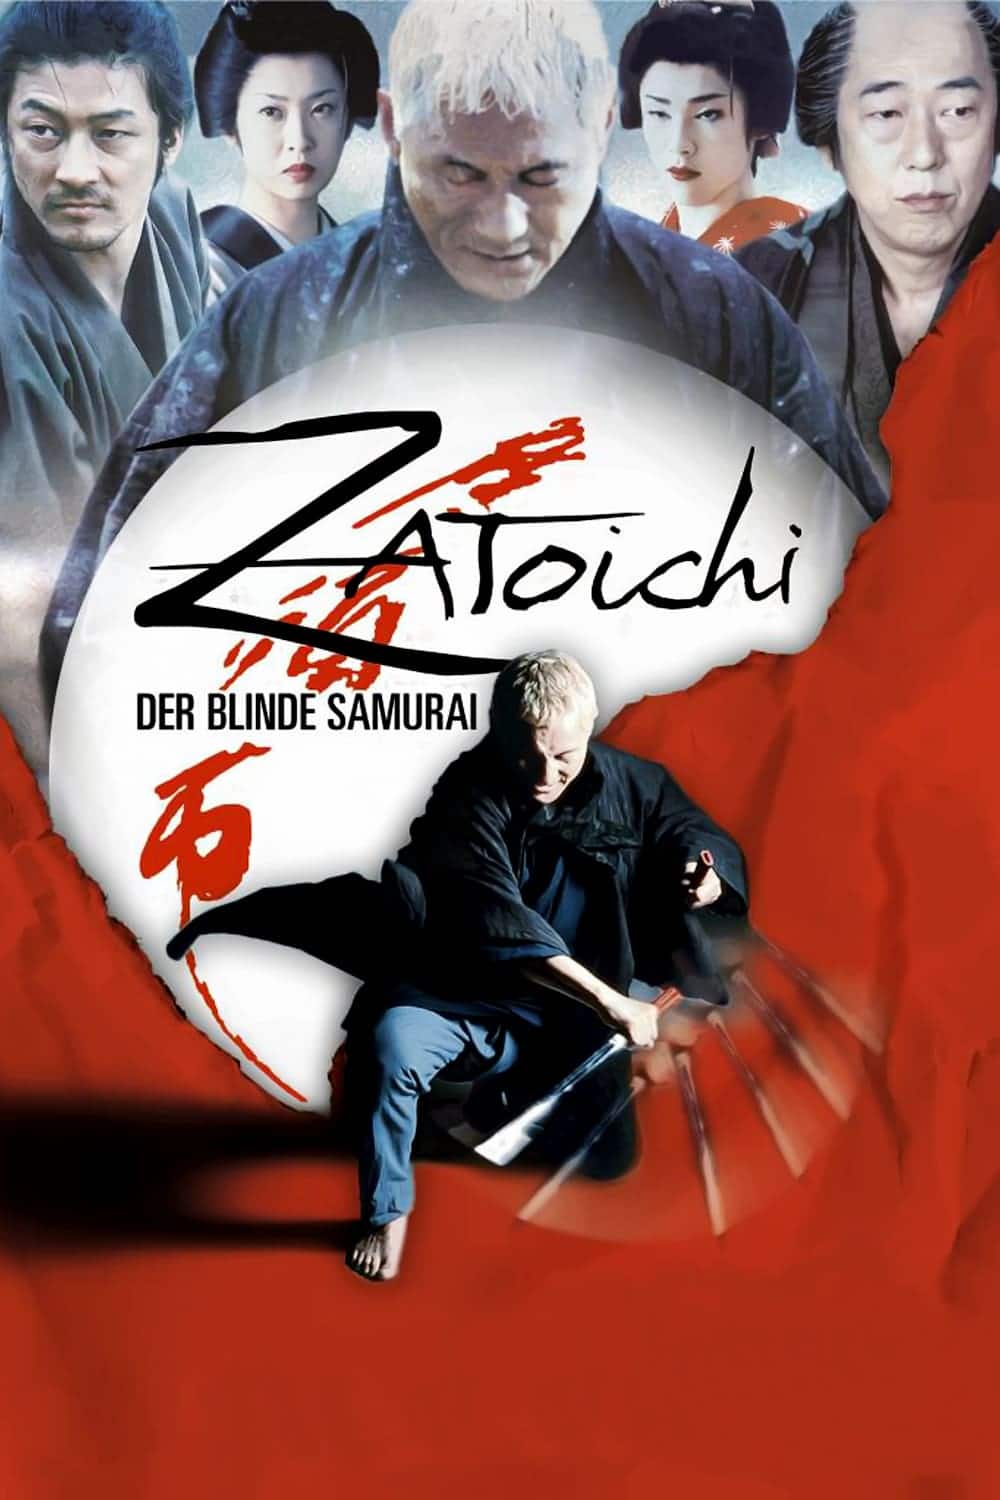 Plakat von "Zatoichi - Der blinde Samurai"